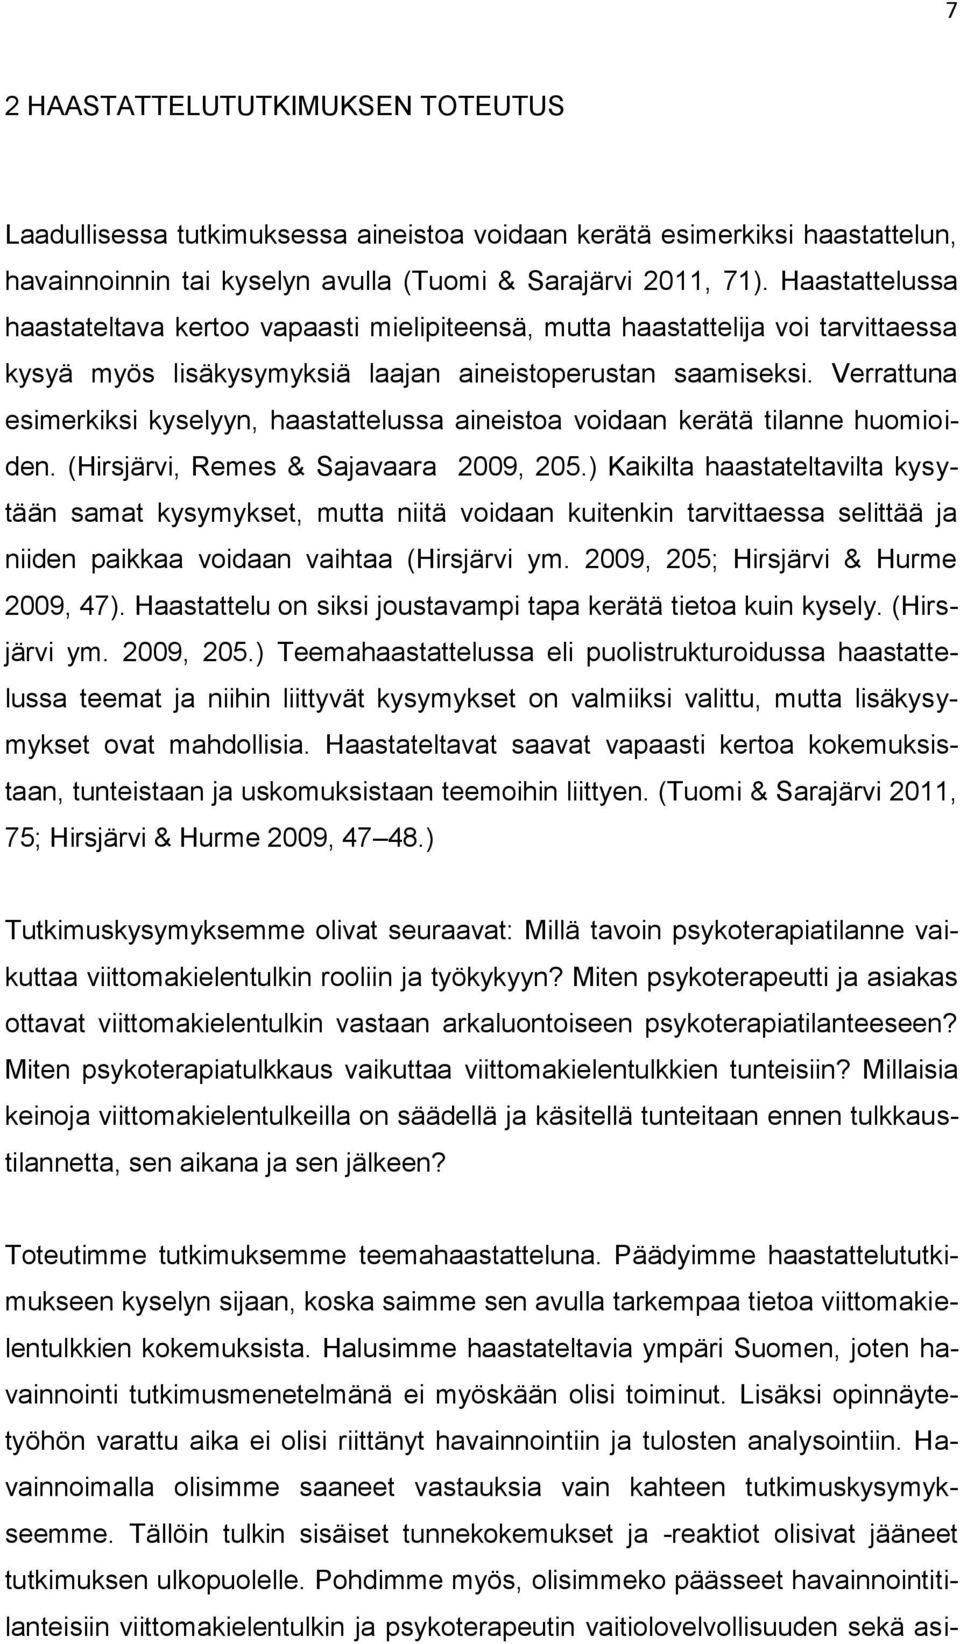 Verrattuna esimerkiksi kyselyyn, haastattelussa aineistoa voidaan kerätä tilanne huomioiden. (Hirsjärvi, Remes & Sajavaara 2009, 205.